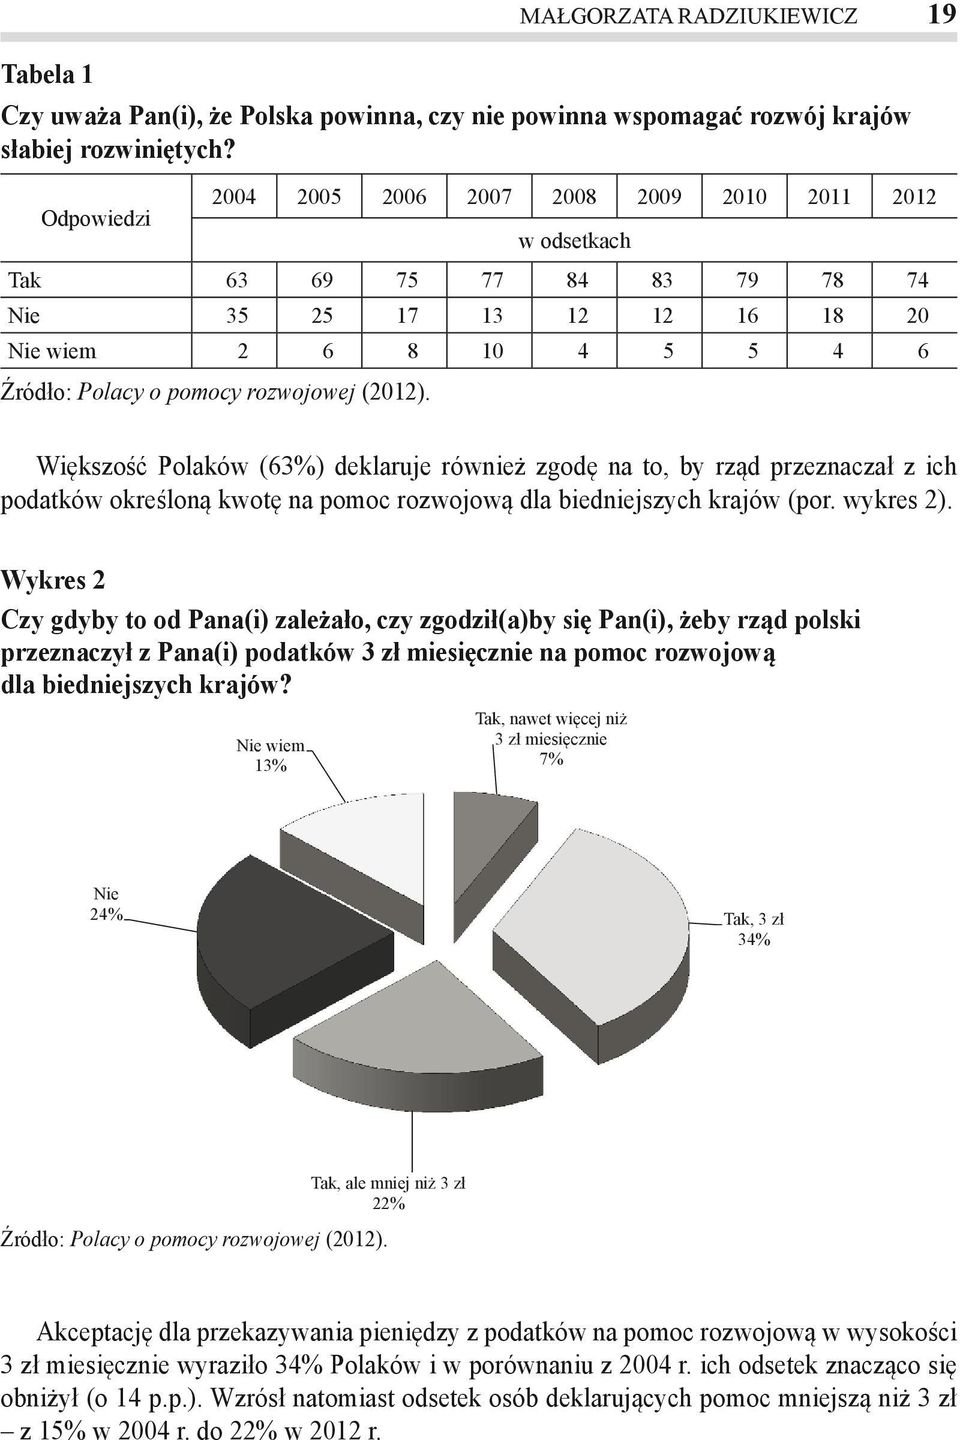 Większość Polaków (63%) deklaruje również zgodę na to, by rząd przeznaczał z ich podatków określoną kwotę na pomoc rozwojową dla biedniejszych krajów (por. wykres 2).